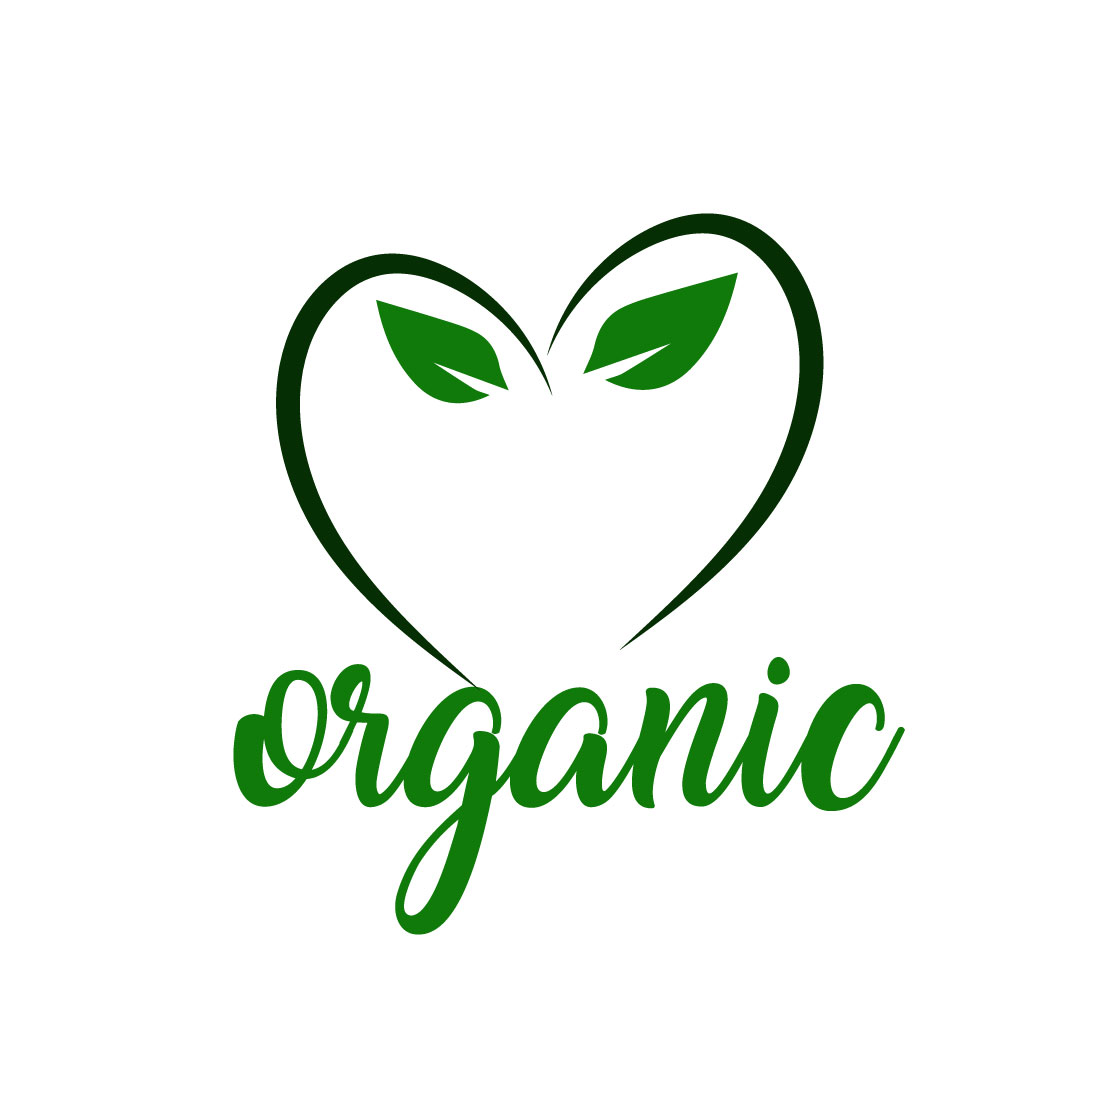 Free Soil health logo preview image.